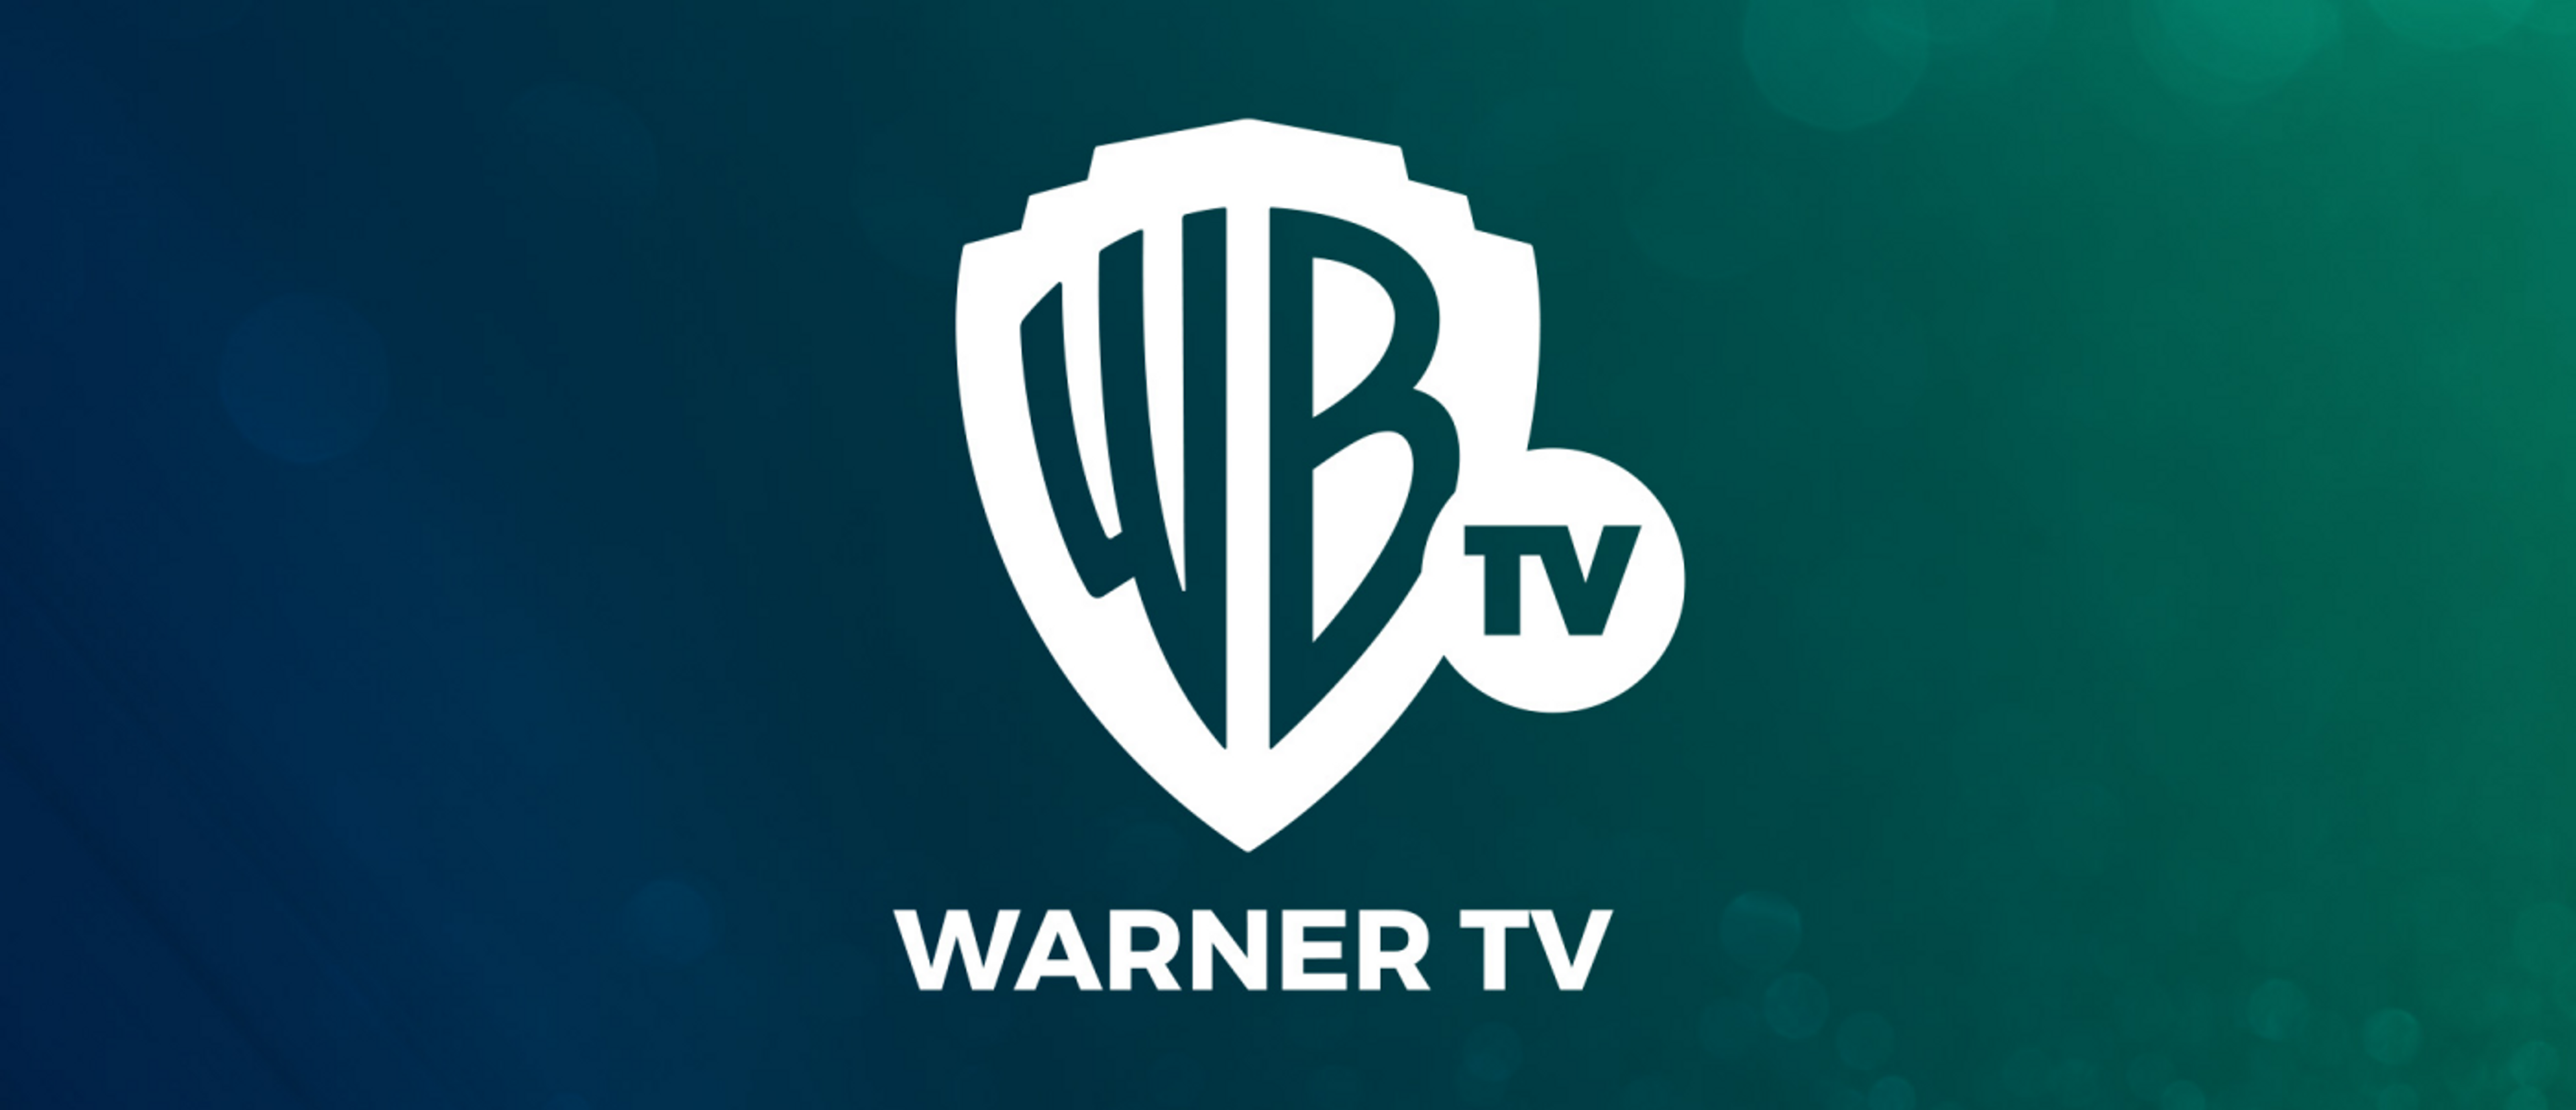 Logo del nuevo canal Warner TV que sustituye a TNT